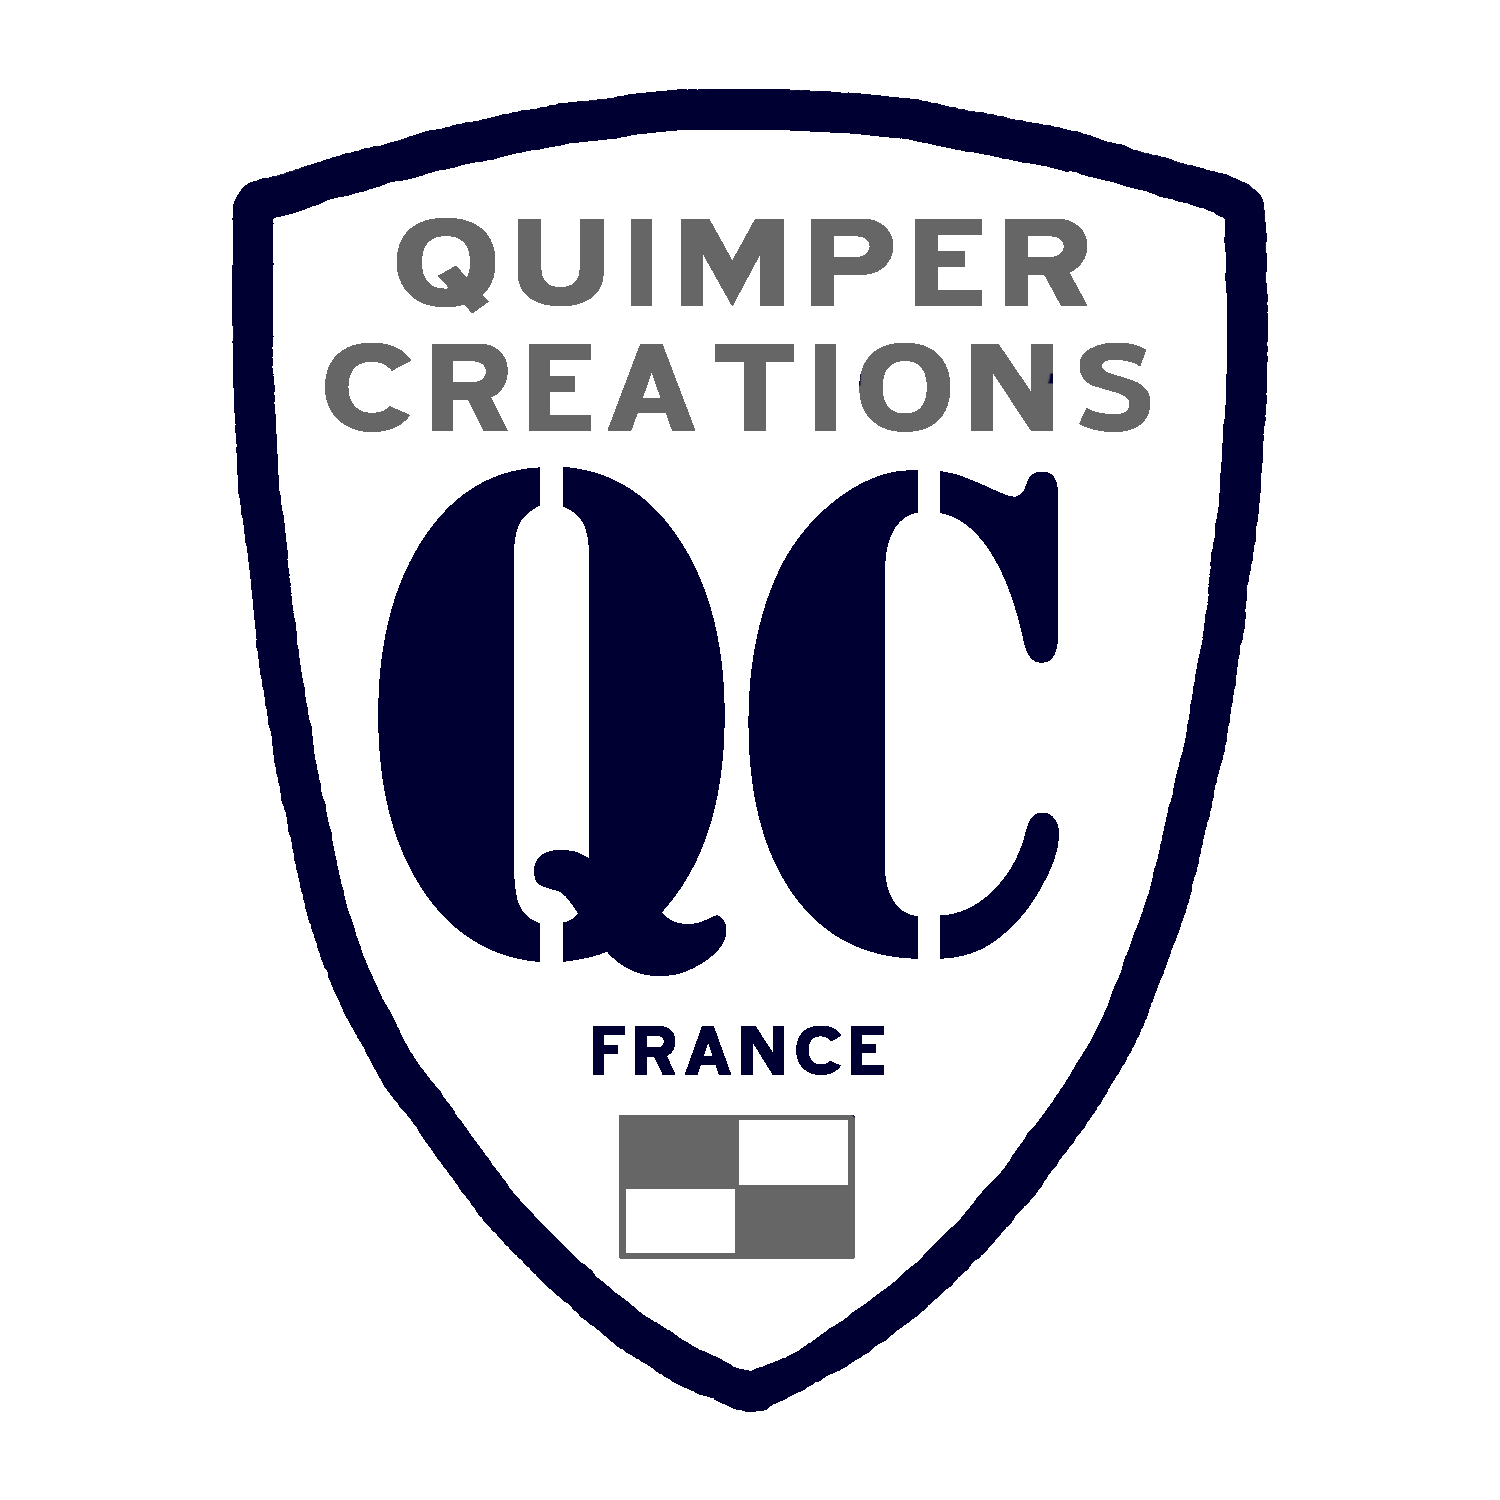 (c) Quimper-creations.com